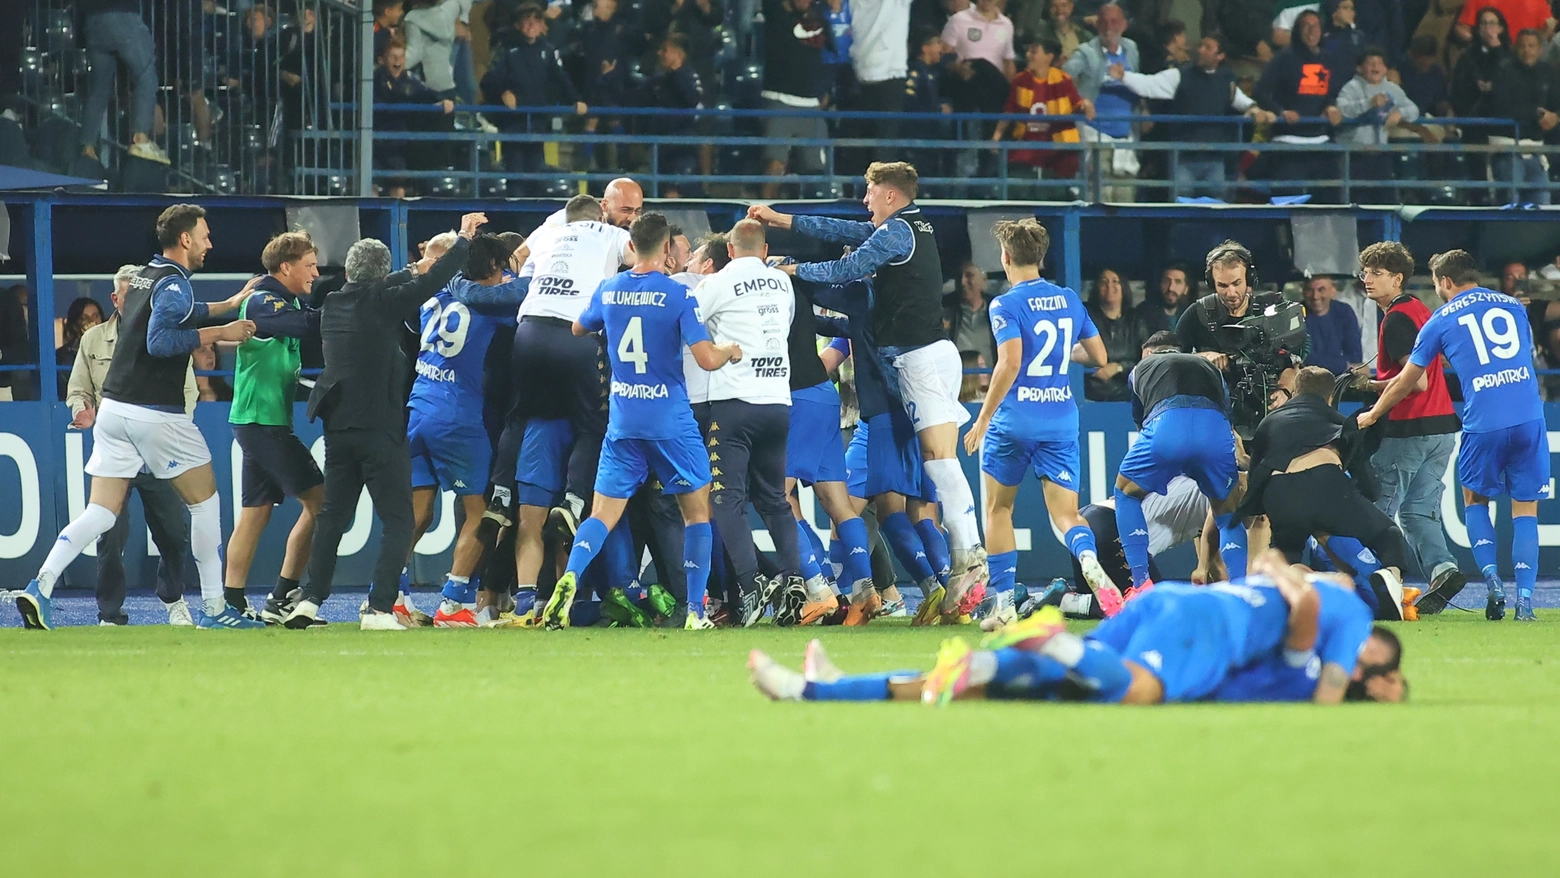 La gioia dell'Empoli dopo il gol-salvezza (foto Tommaso Gasperini/Germogli)